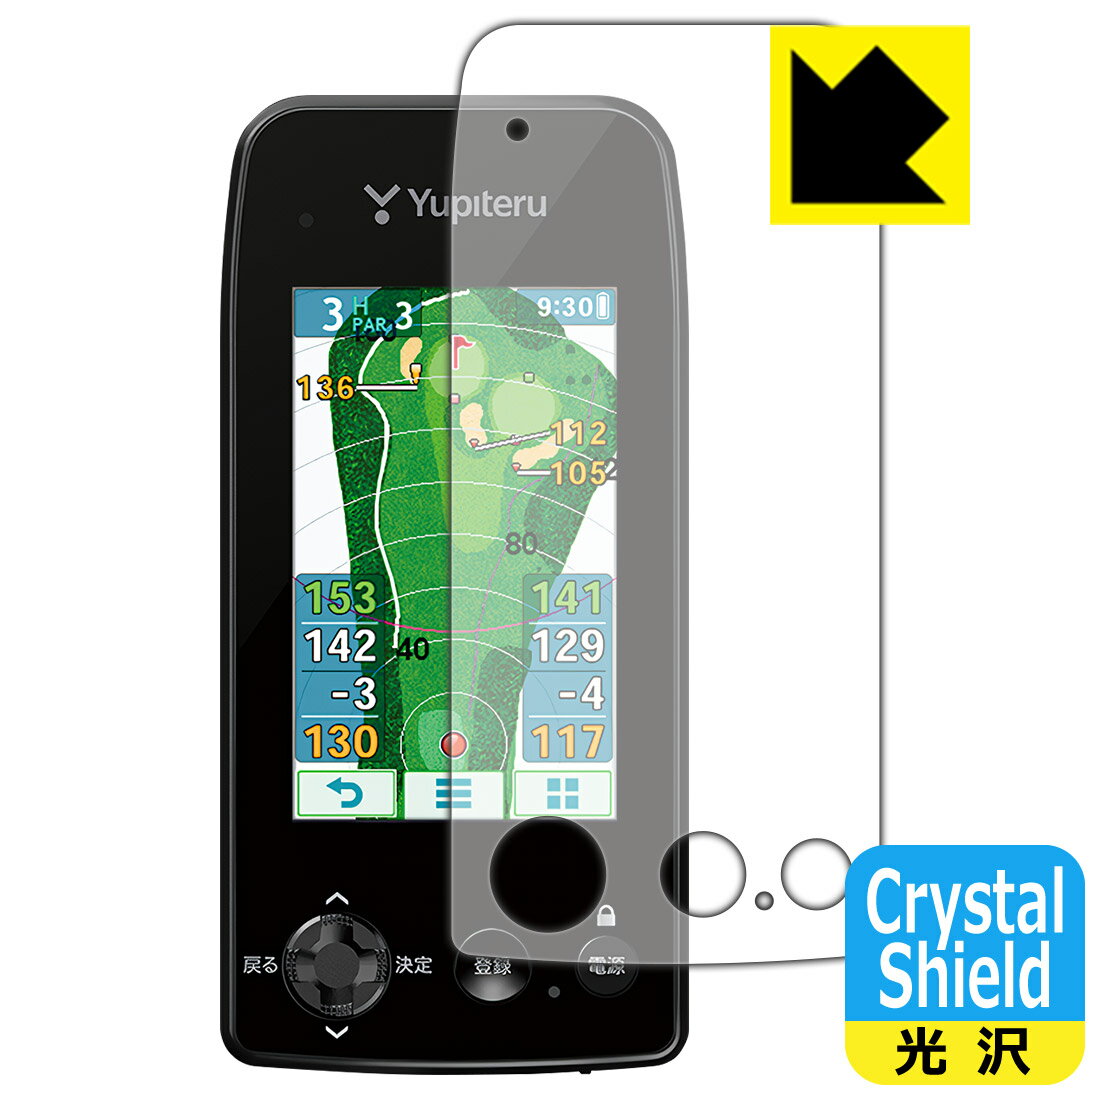 Crystal Shield保護フィルム ゴルフナビ YGN7100 / YGN7000 日本製 自社製造直販